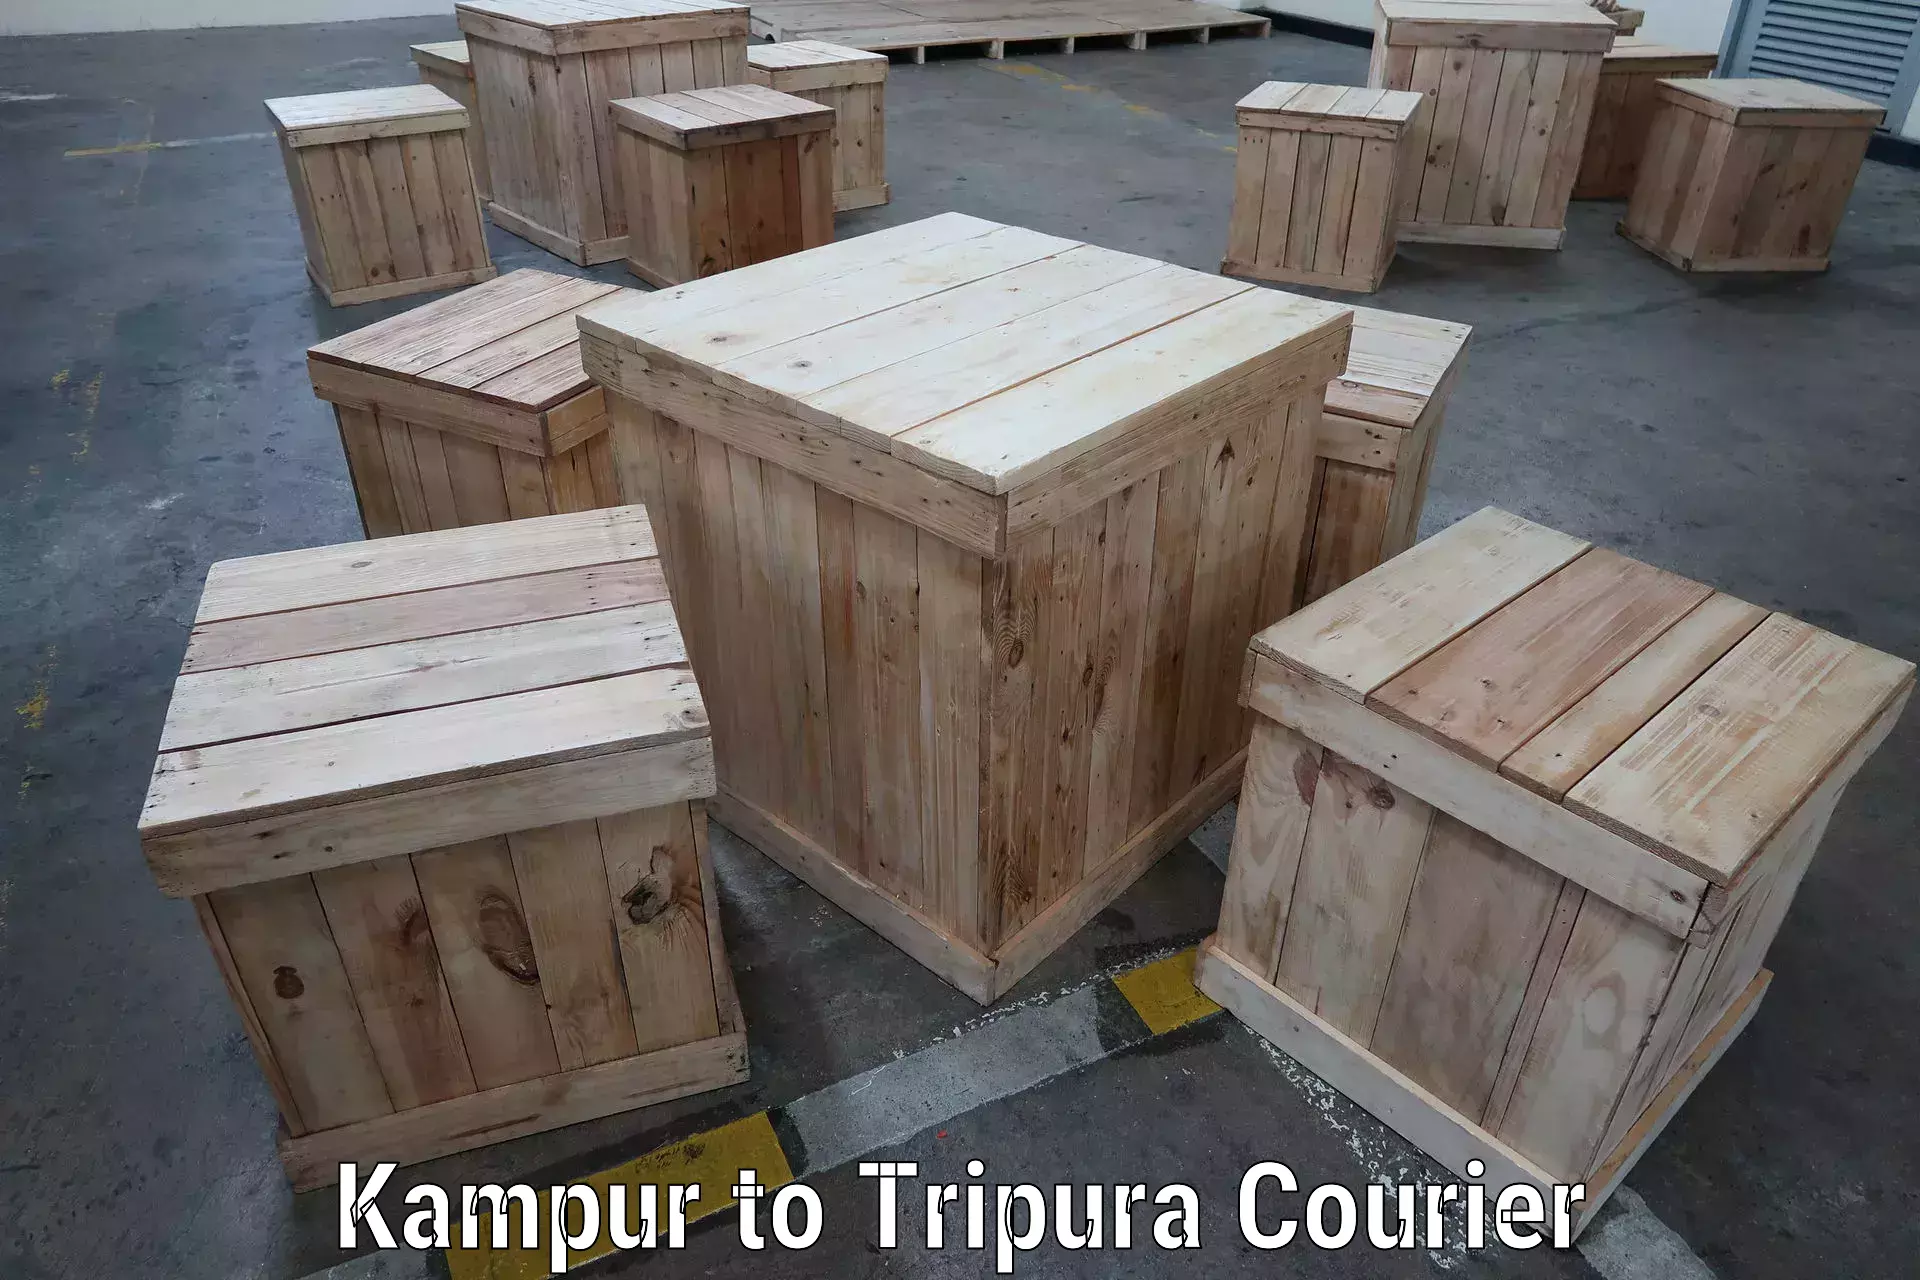 Courier service innovation Kampur to IIIT Agartala